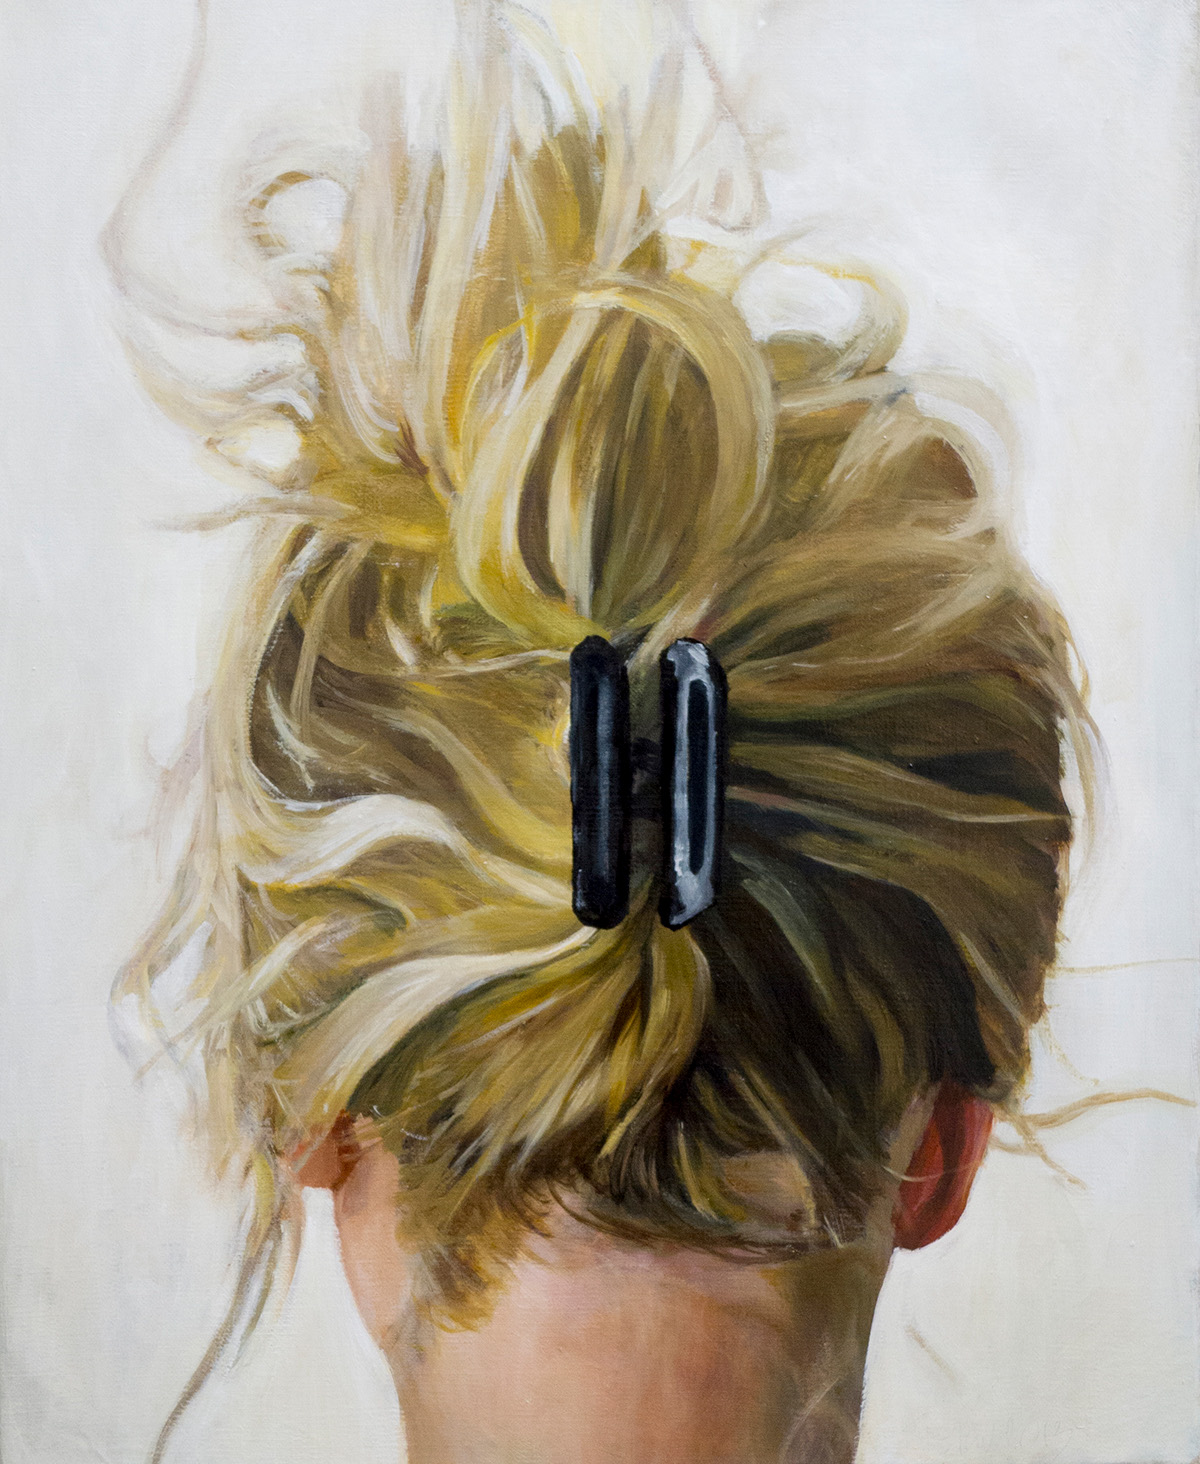 Paintings oil on canvas portrait woman hair back girl kielar